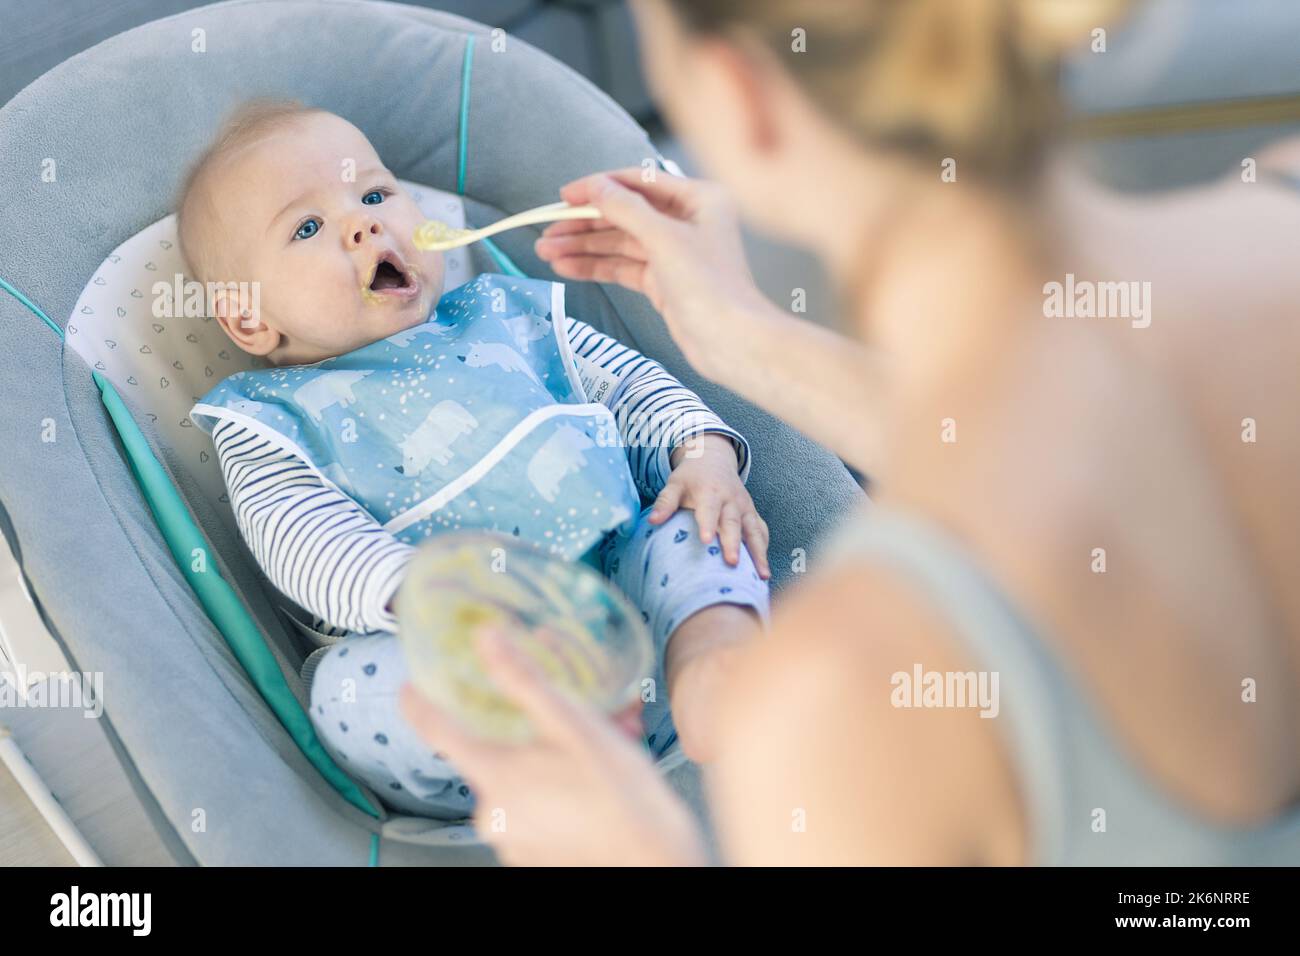 Cuchara madre alimentando a su bebé niño en silla de bebé con puré de frutas. Concepto de introducción de alimentos sólidos para bebés. Foto de stock